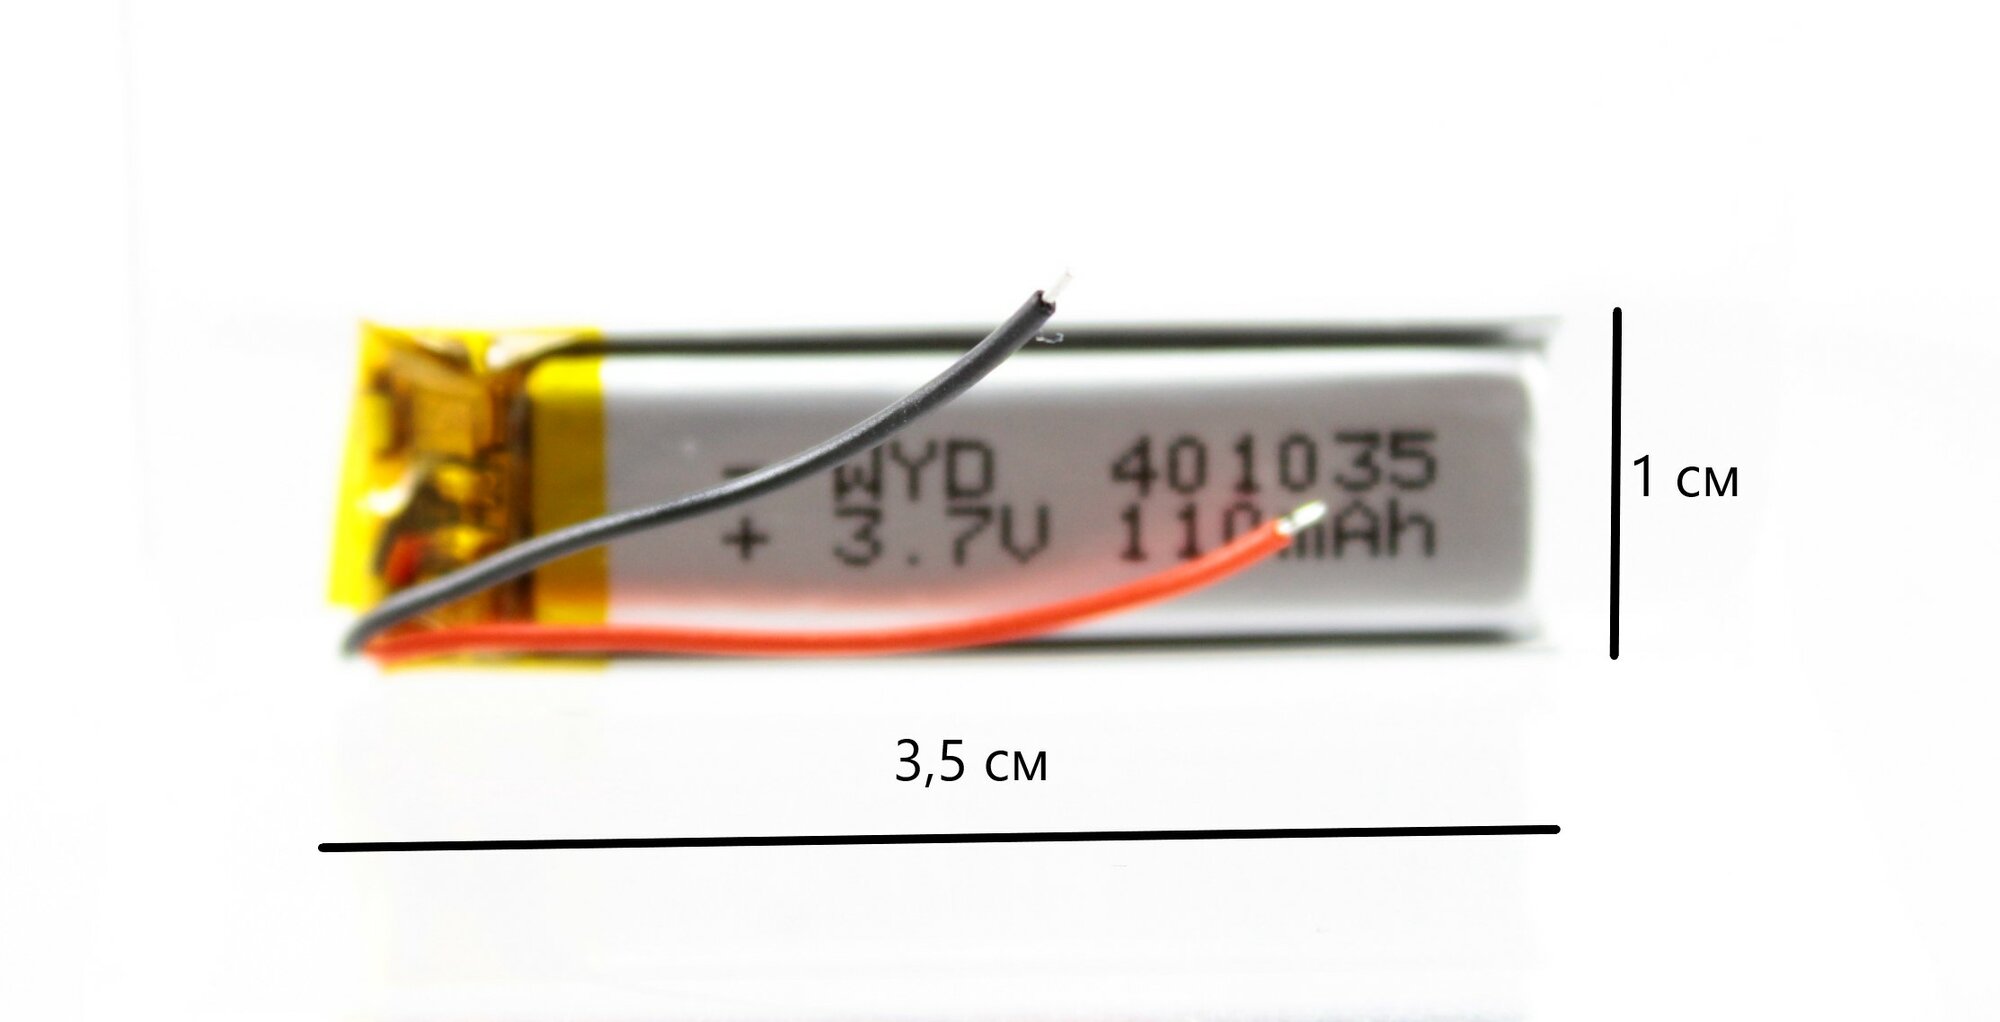 Аккумулятор универсальный 401035 (40*10*35 мм) 110 mAh